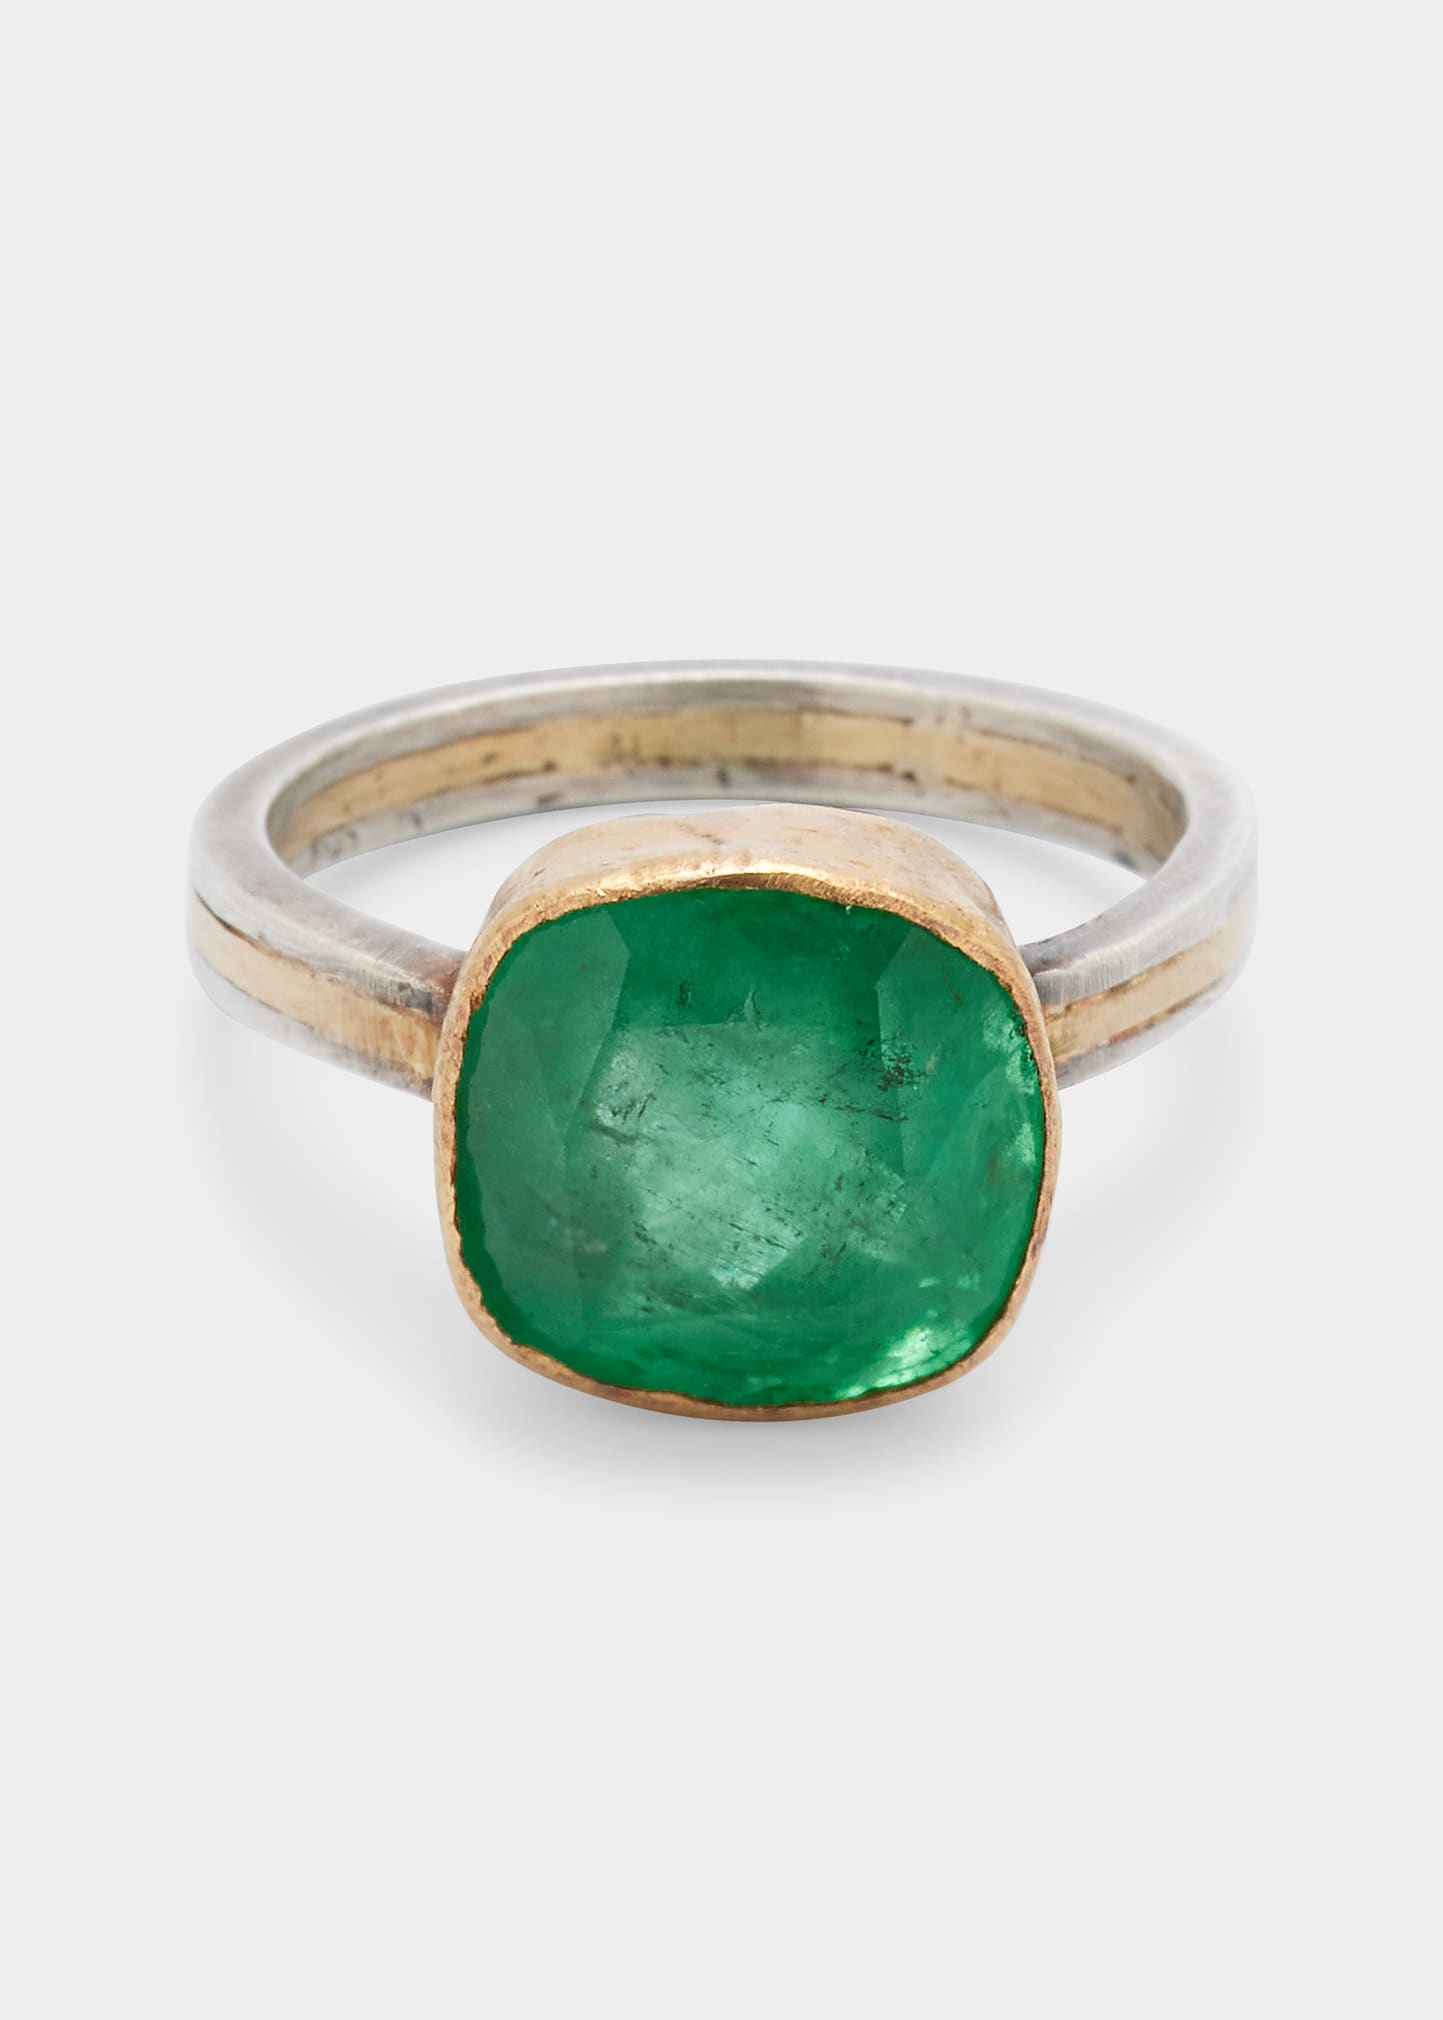 JUDY GEIB Cushion-Cut Colombian Emerald Ring